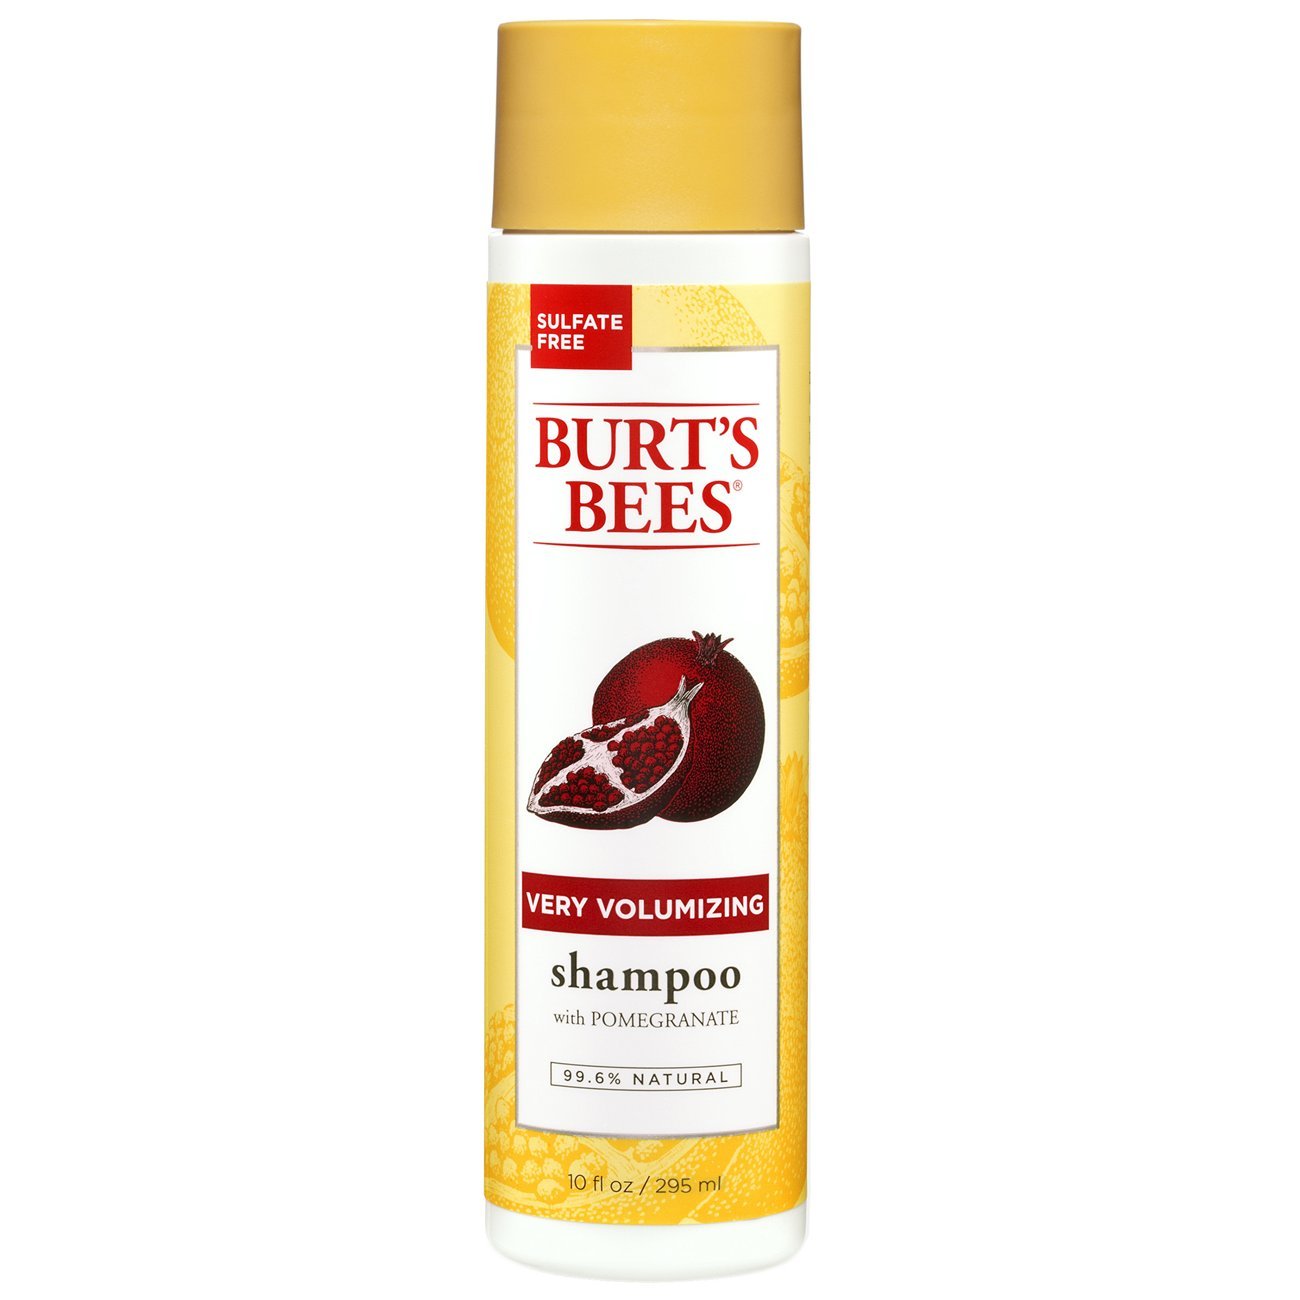 Burt's Bees Shampoo Very Volumizing - In Stock